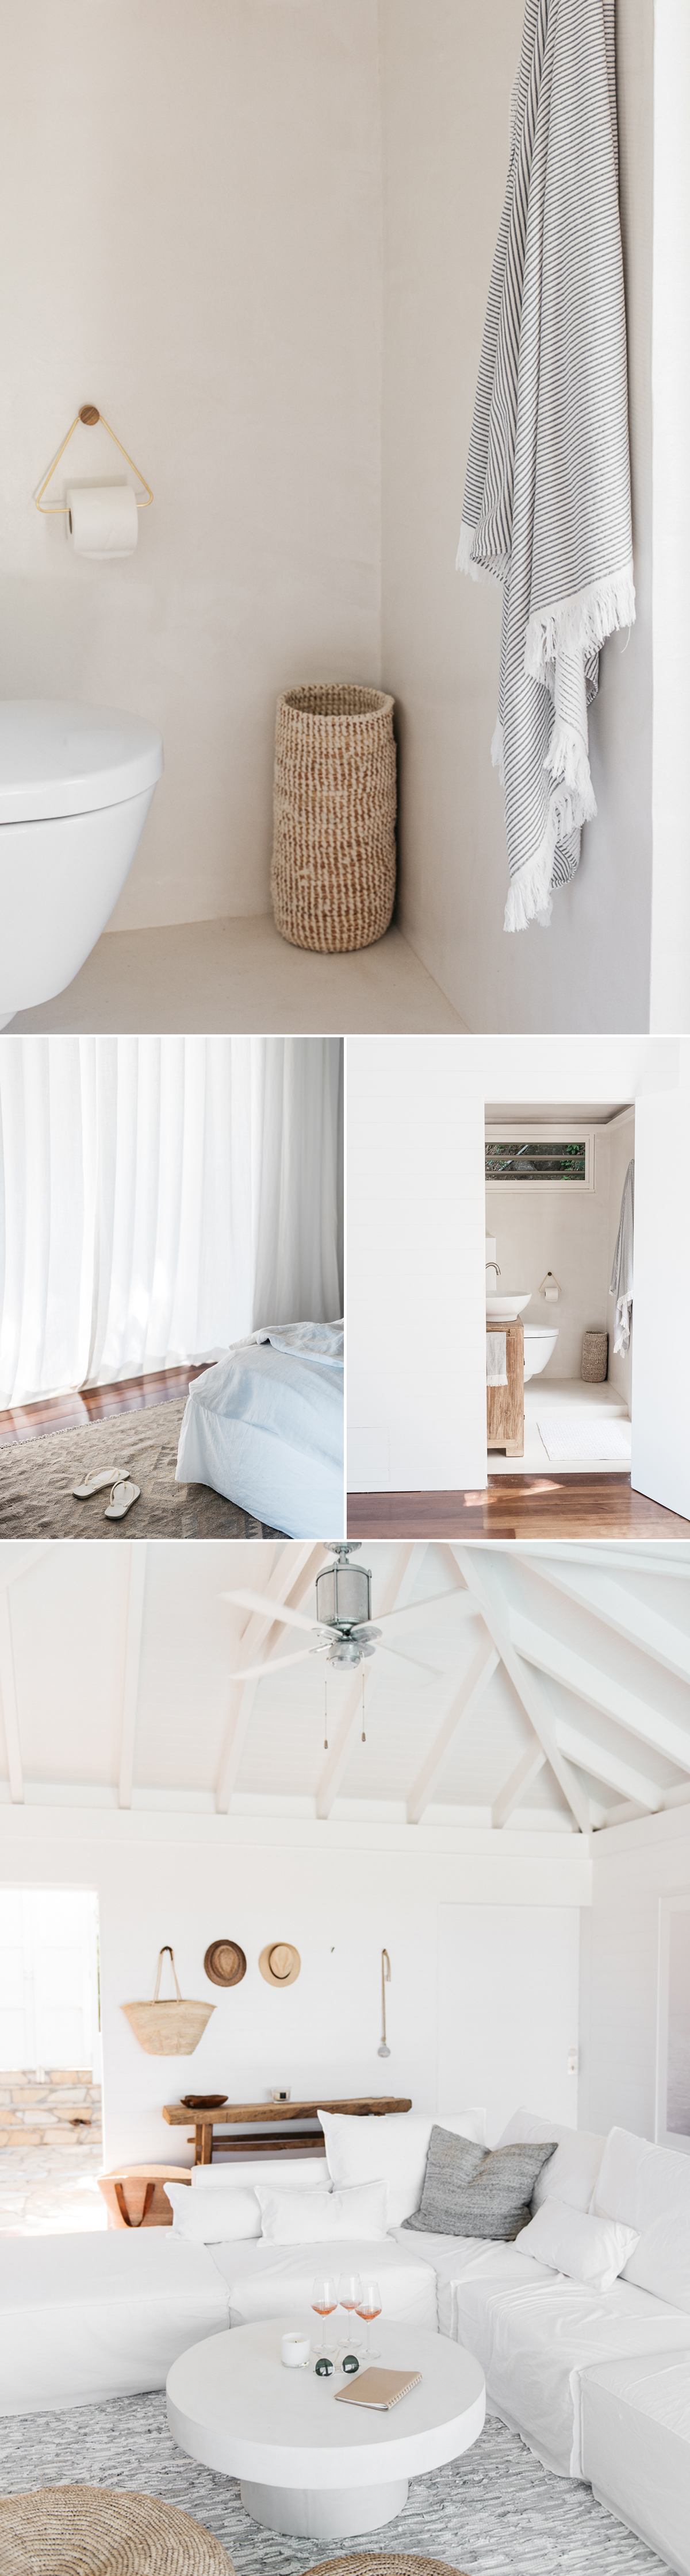 Imágenes de diferentes zonas del hotel decorado en Slow Design